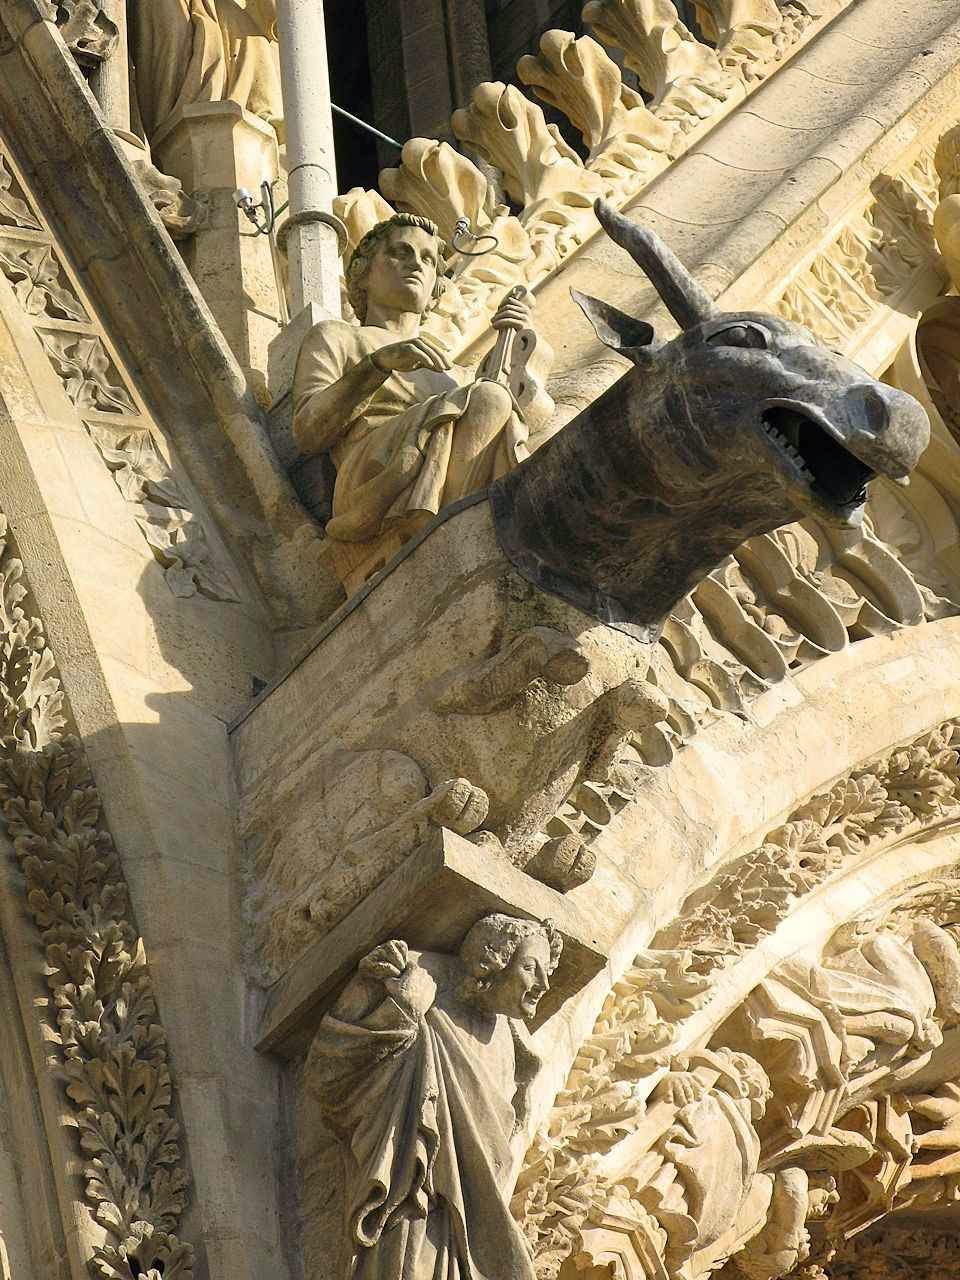 São Lucas Evangelista é representado pelo boi. Catedral de Reims, detalhe da fachada.